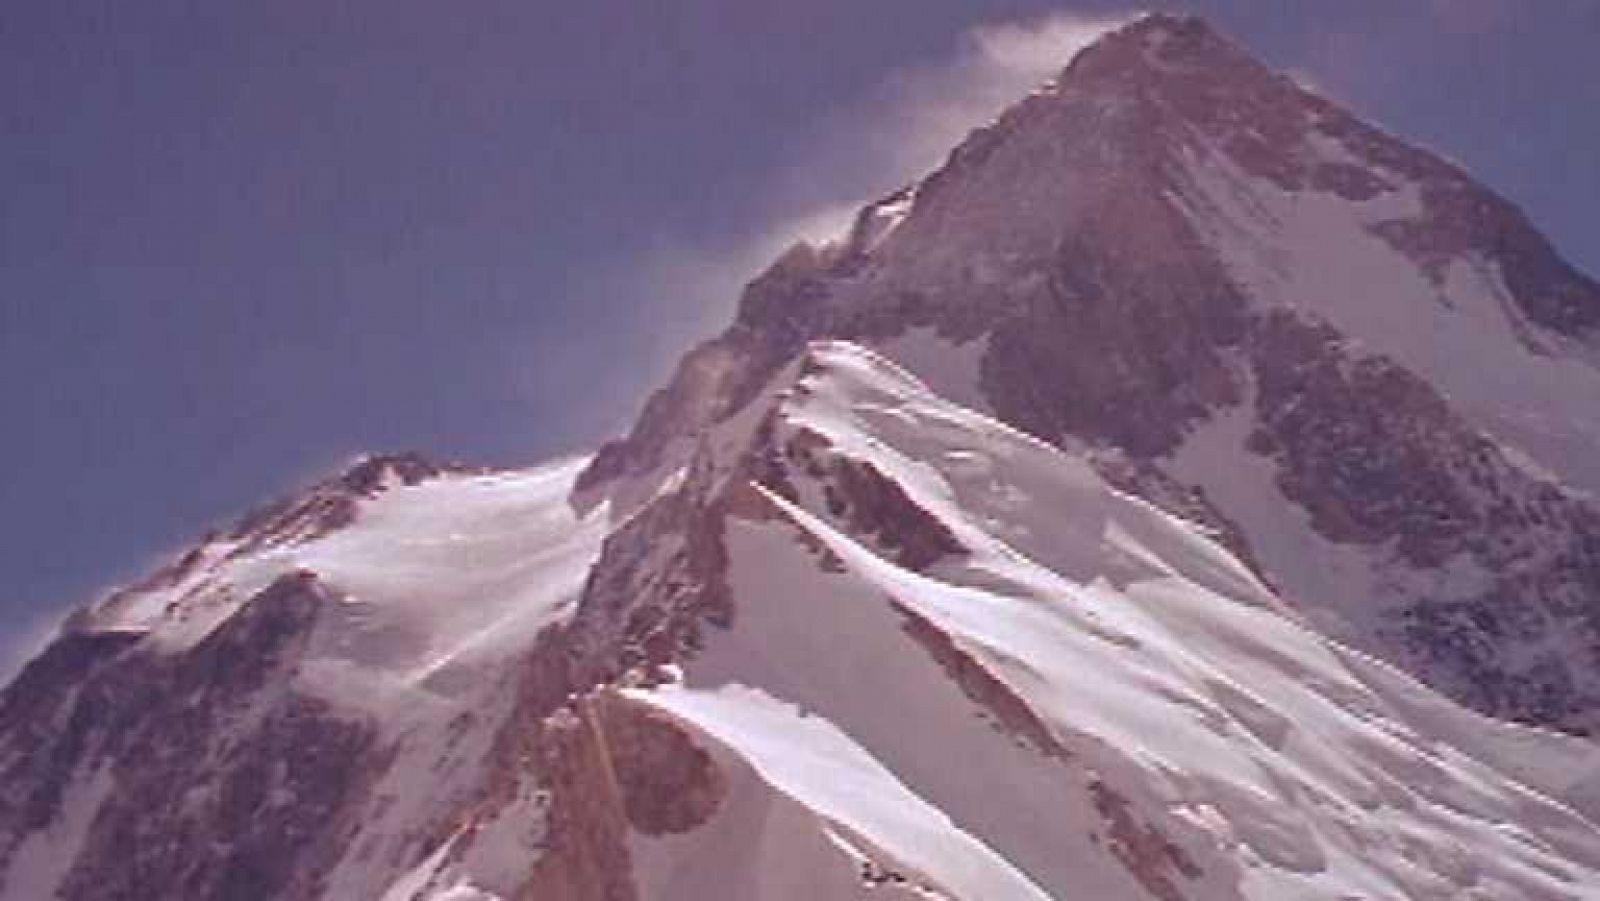 Al filo de lo imposible - Hidden Peak: La Montaña Oculta (2)